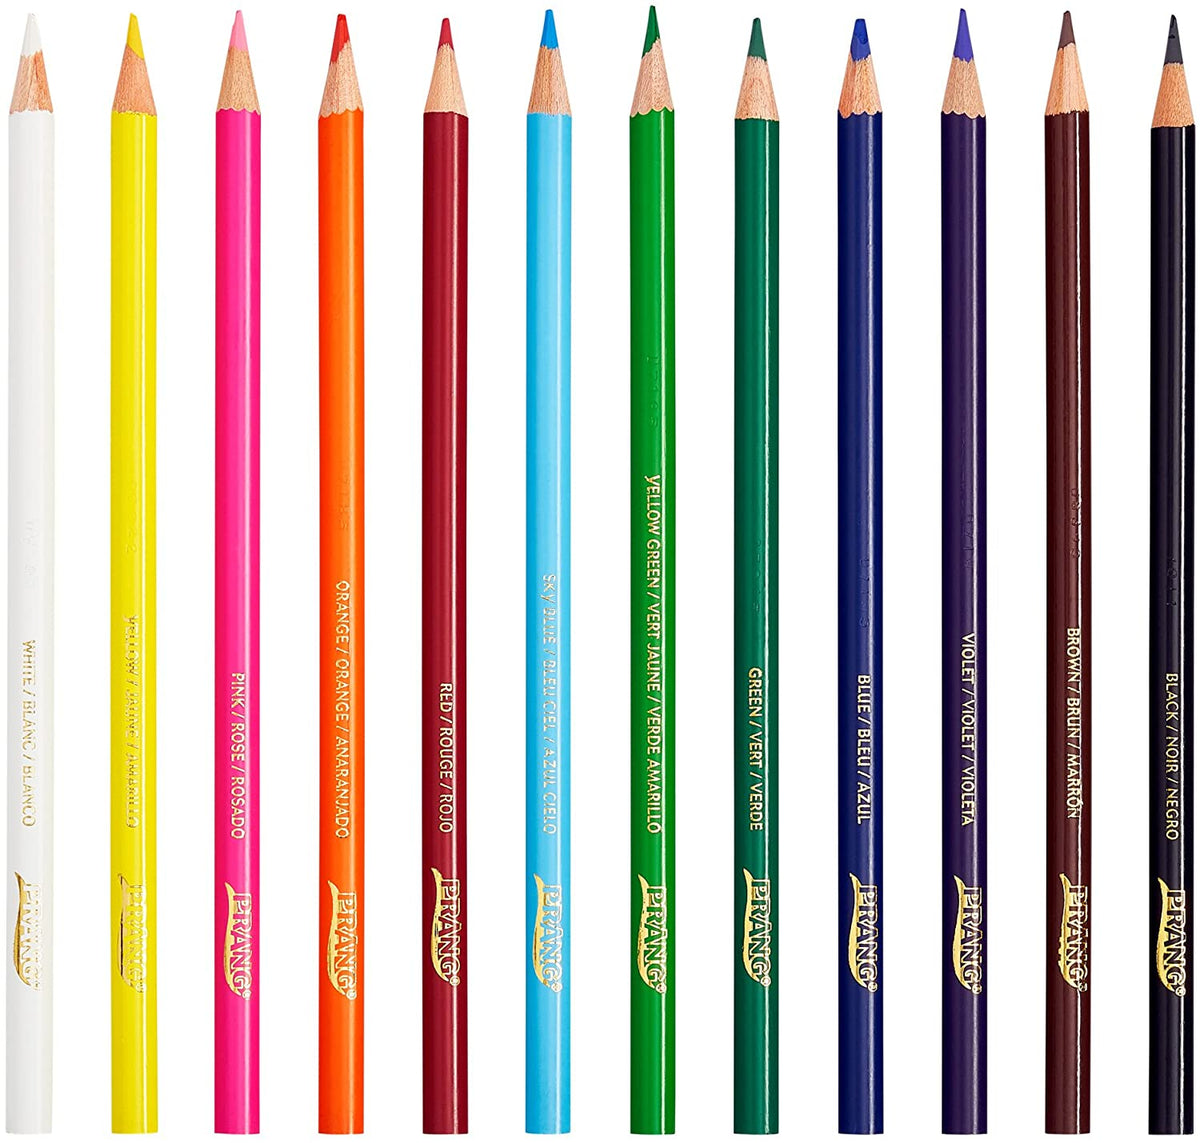 Prang Colored Pencils, 12 Count, 3.3mm (DIX22120)